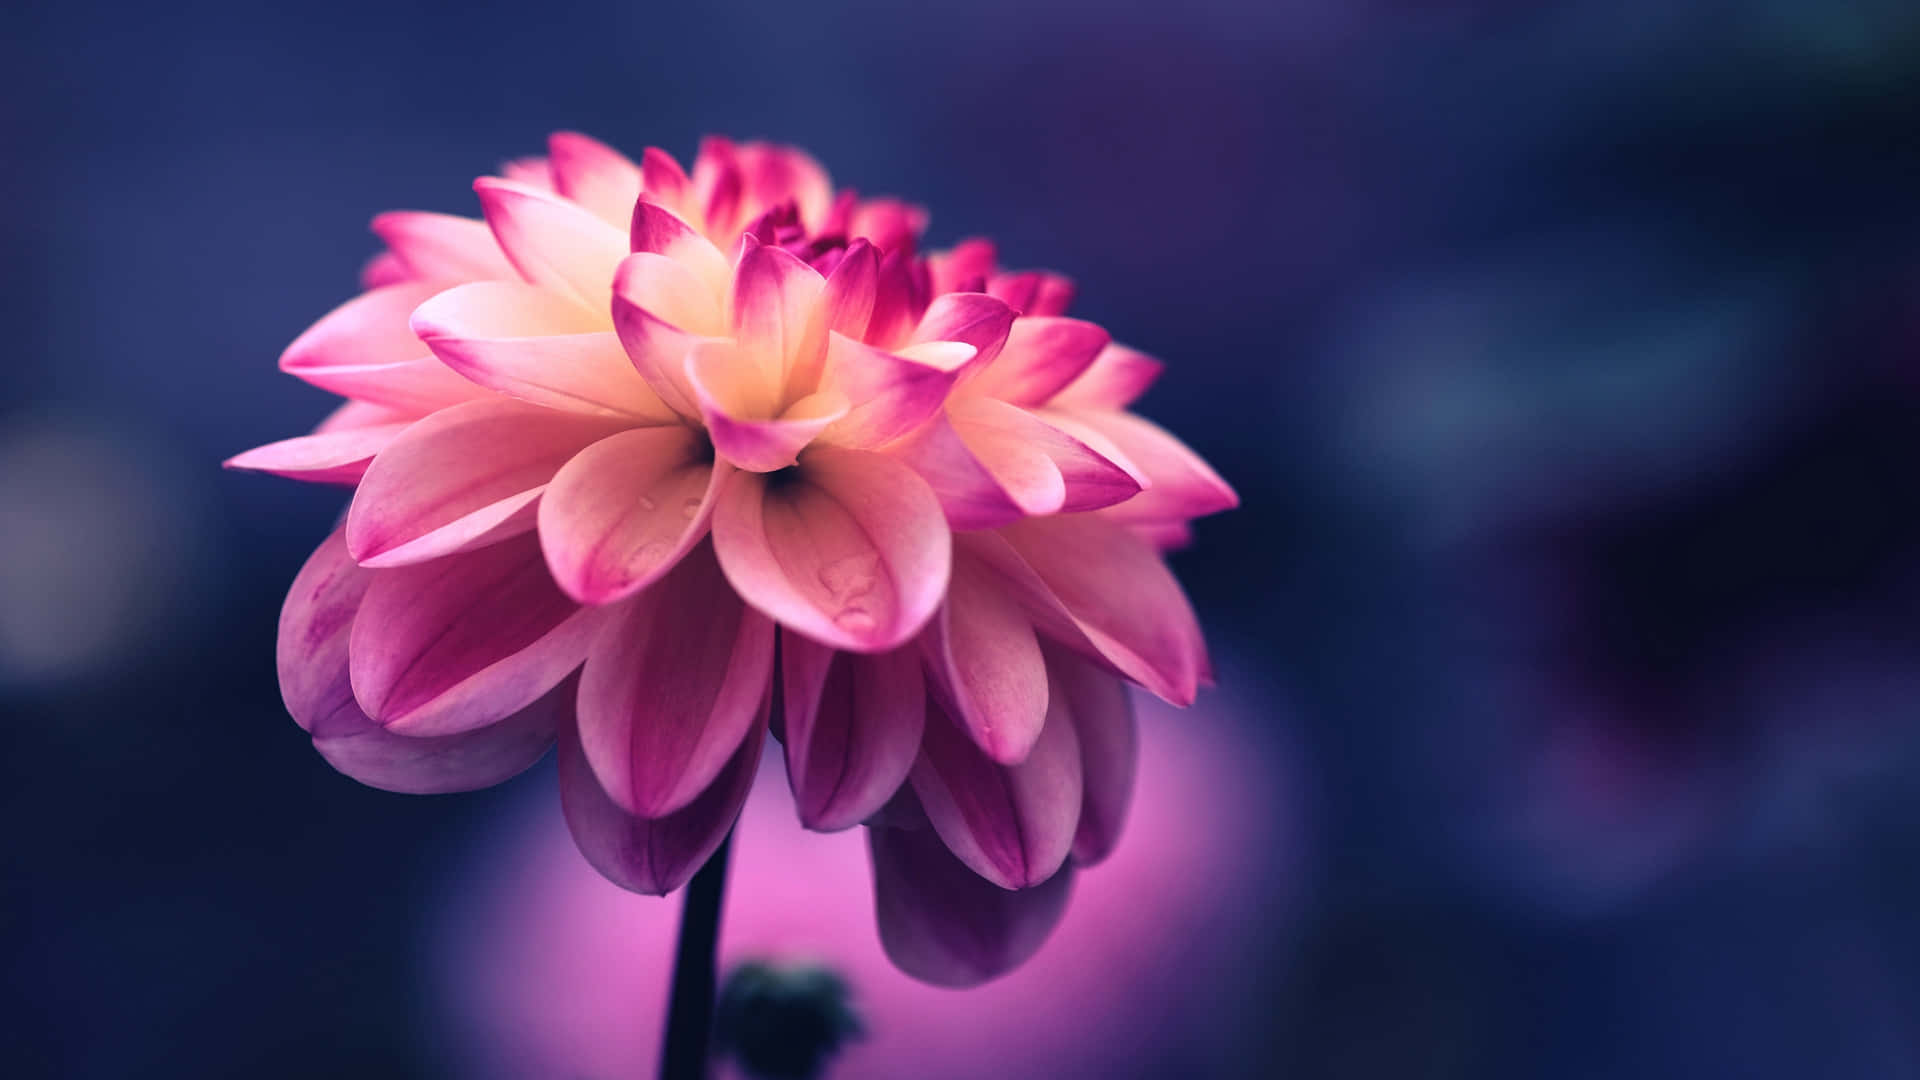 Làm cho những ngày của bạn trở nên đầy sức sống với vẻ đẹp tuyệt vời của hoa dạ lý hồng.xuất hiện trên màn hình máy tính của bạn. Hãy đến và lấy nguồn cảm hứng với những bông hoa dạ lý hồng cá tính tại hình ảnh liên quan này.